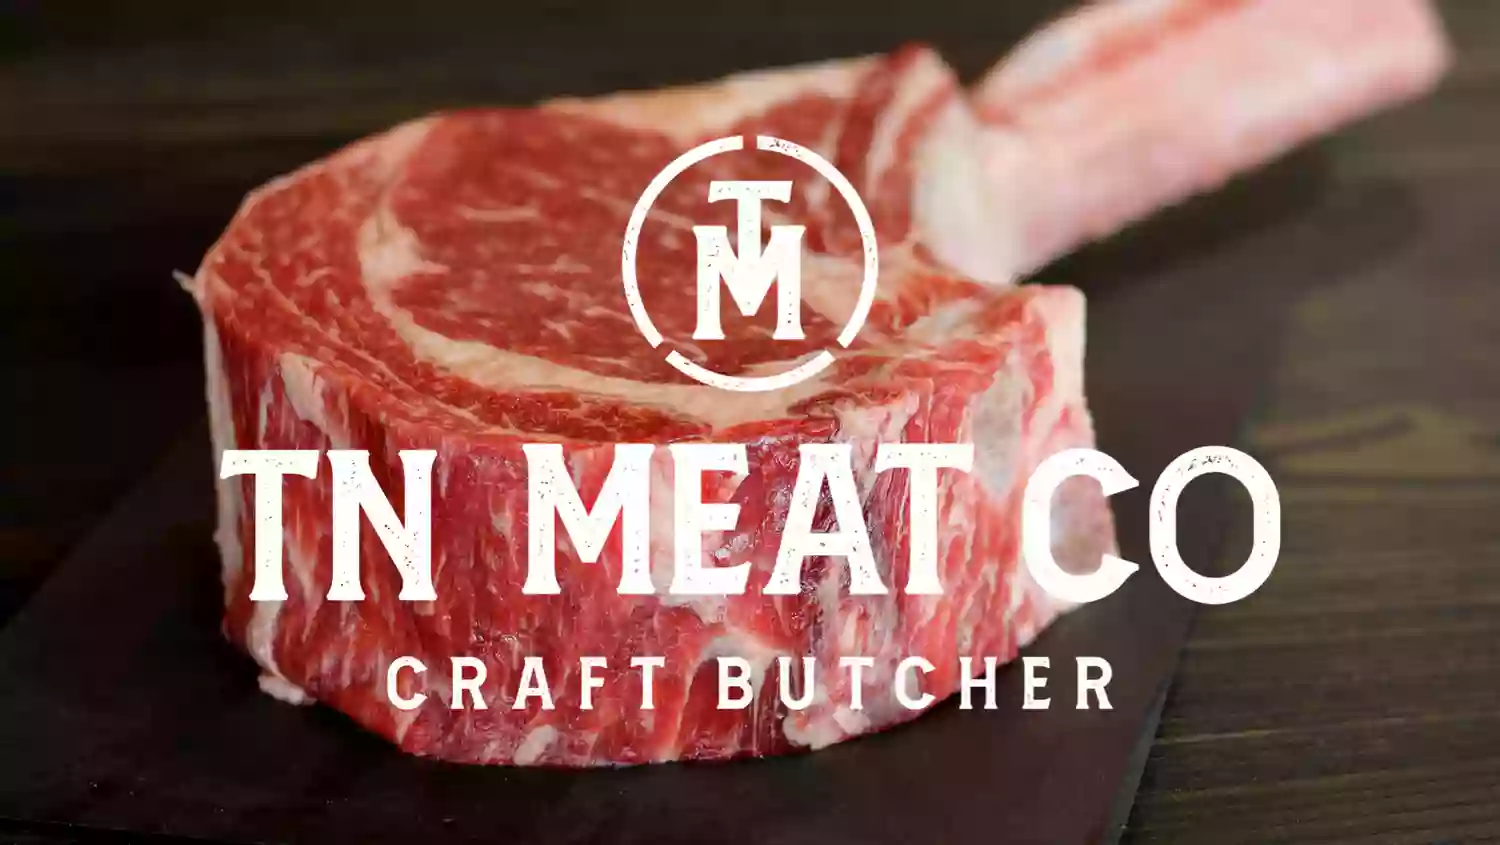 TN Meat Co